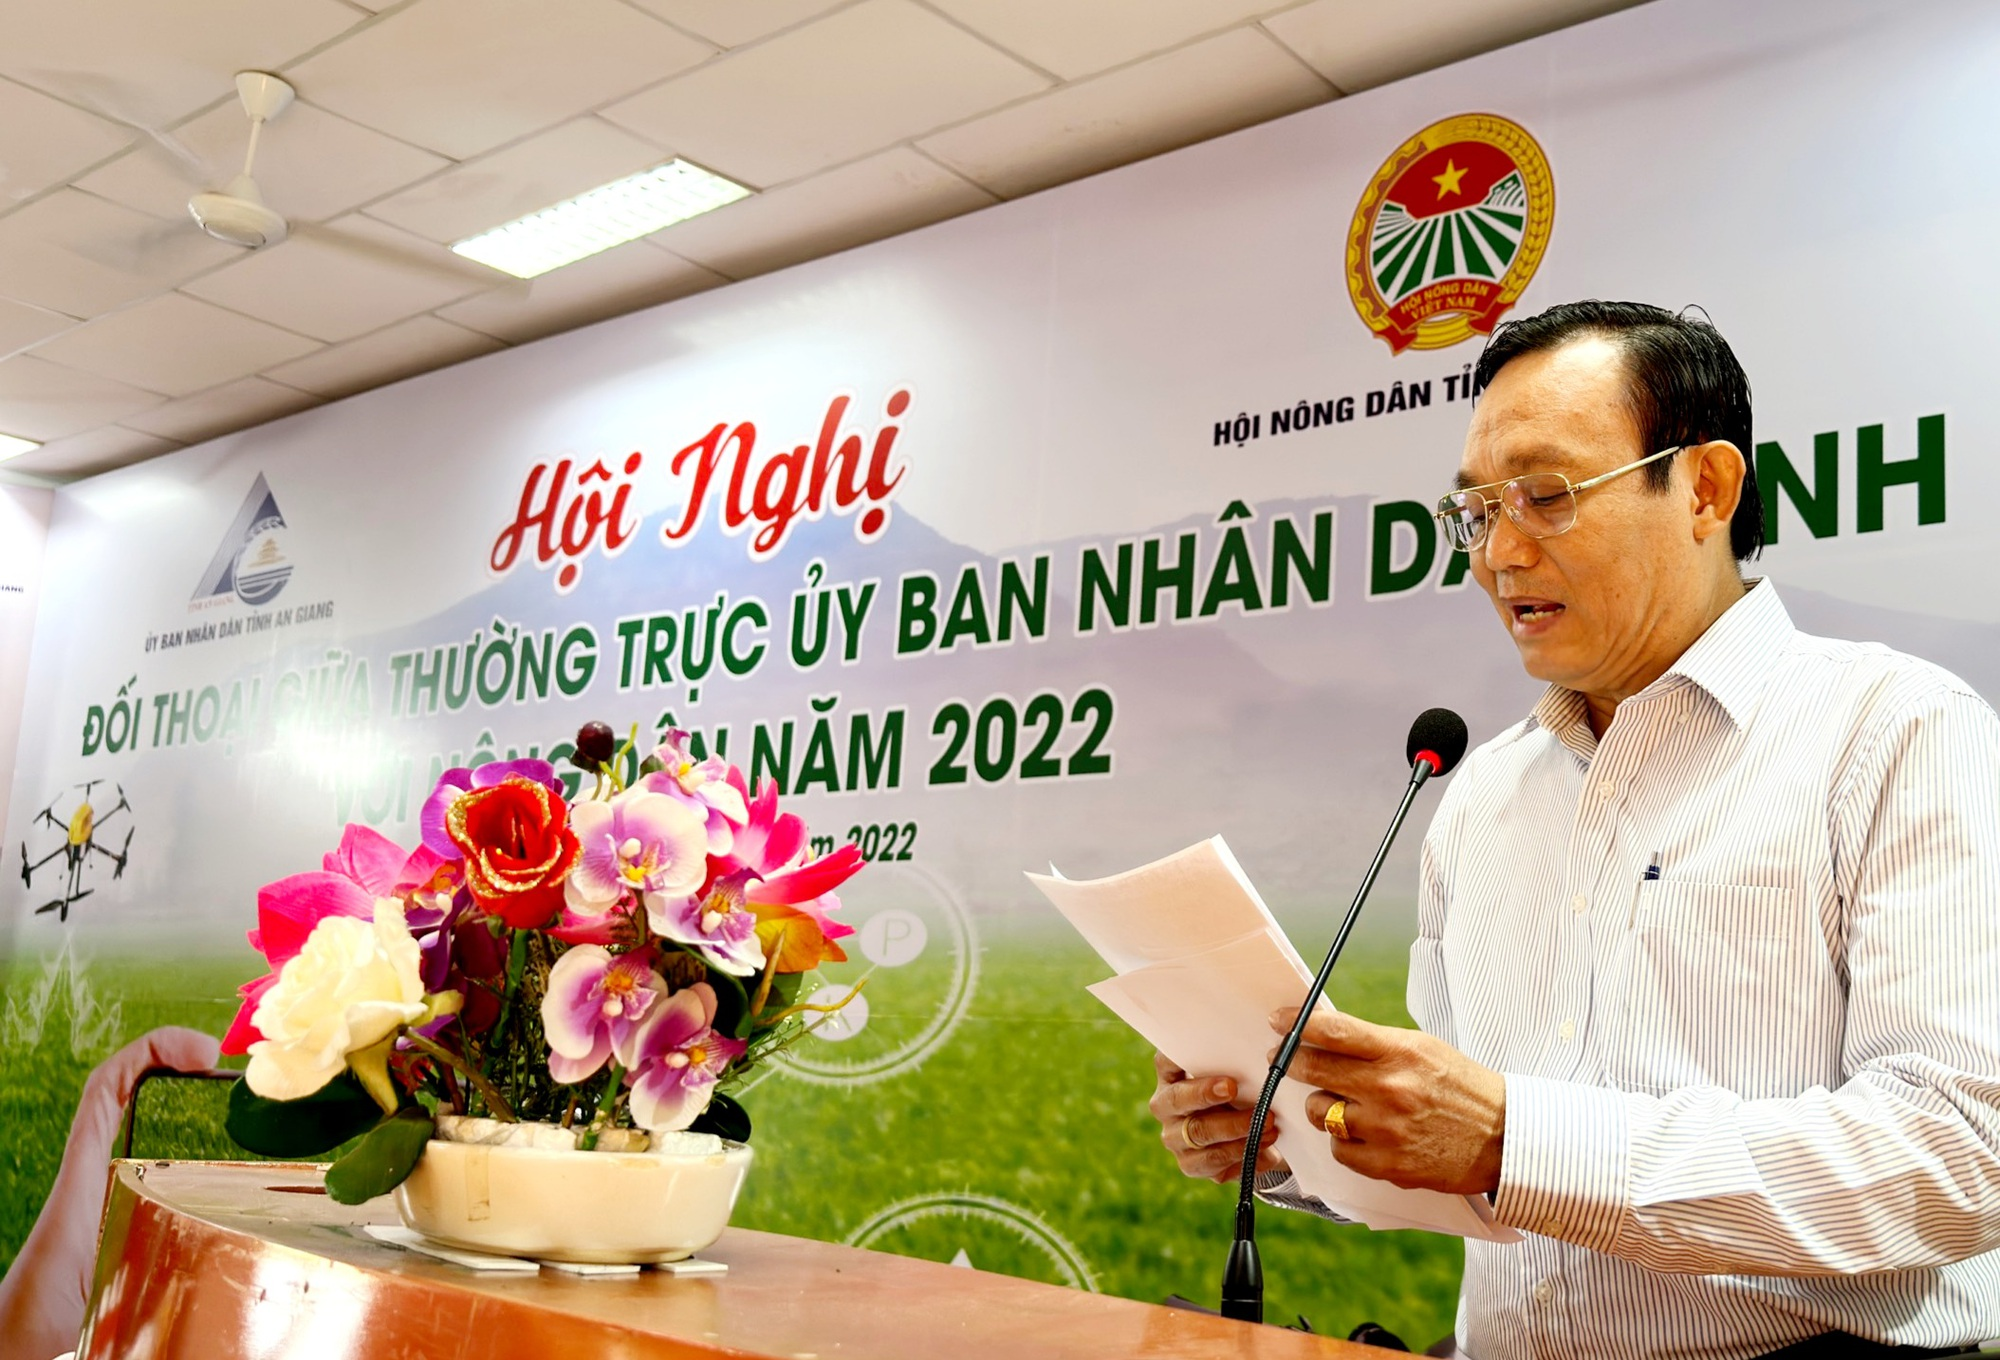 Đối thoại với nông dân, Chủ tịch UBND tỉnh An Giang đề nghị nông dân tham gia vào các mô hình kinh tế hợp tác - Ảnh 2.